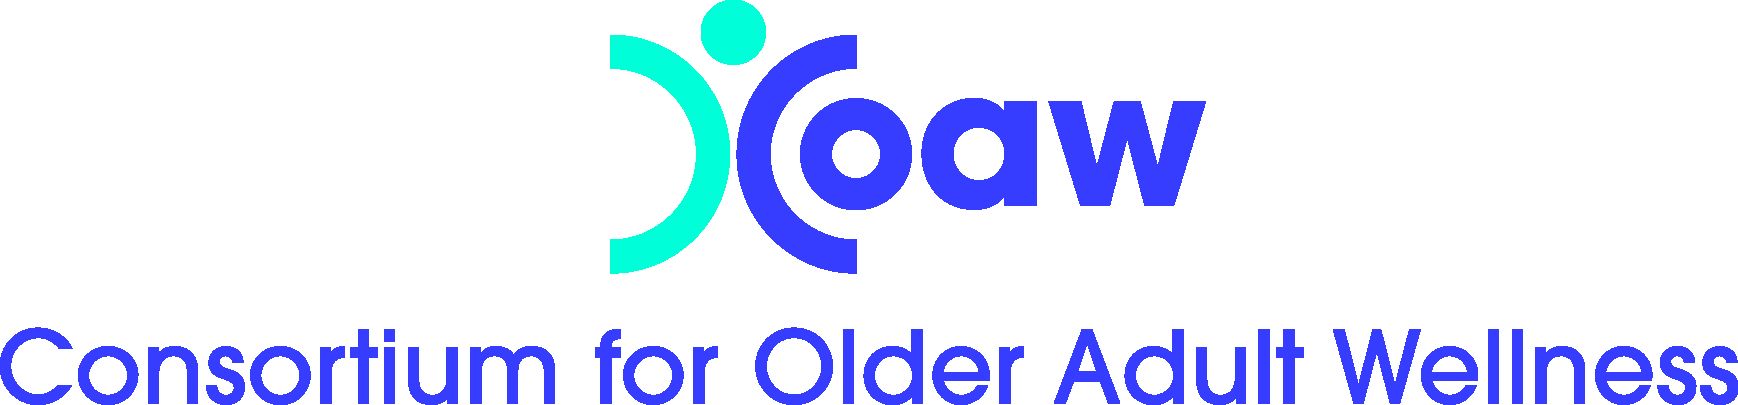 coaworg Logo